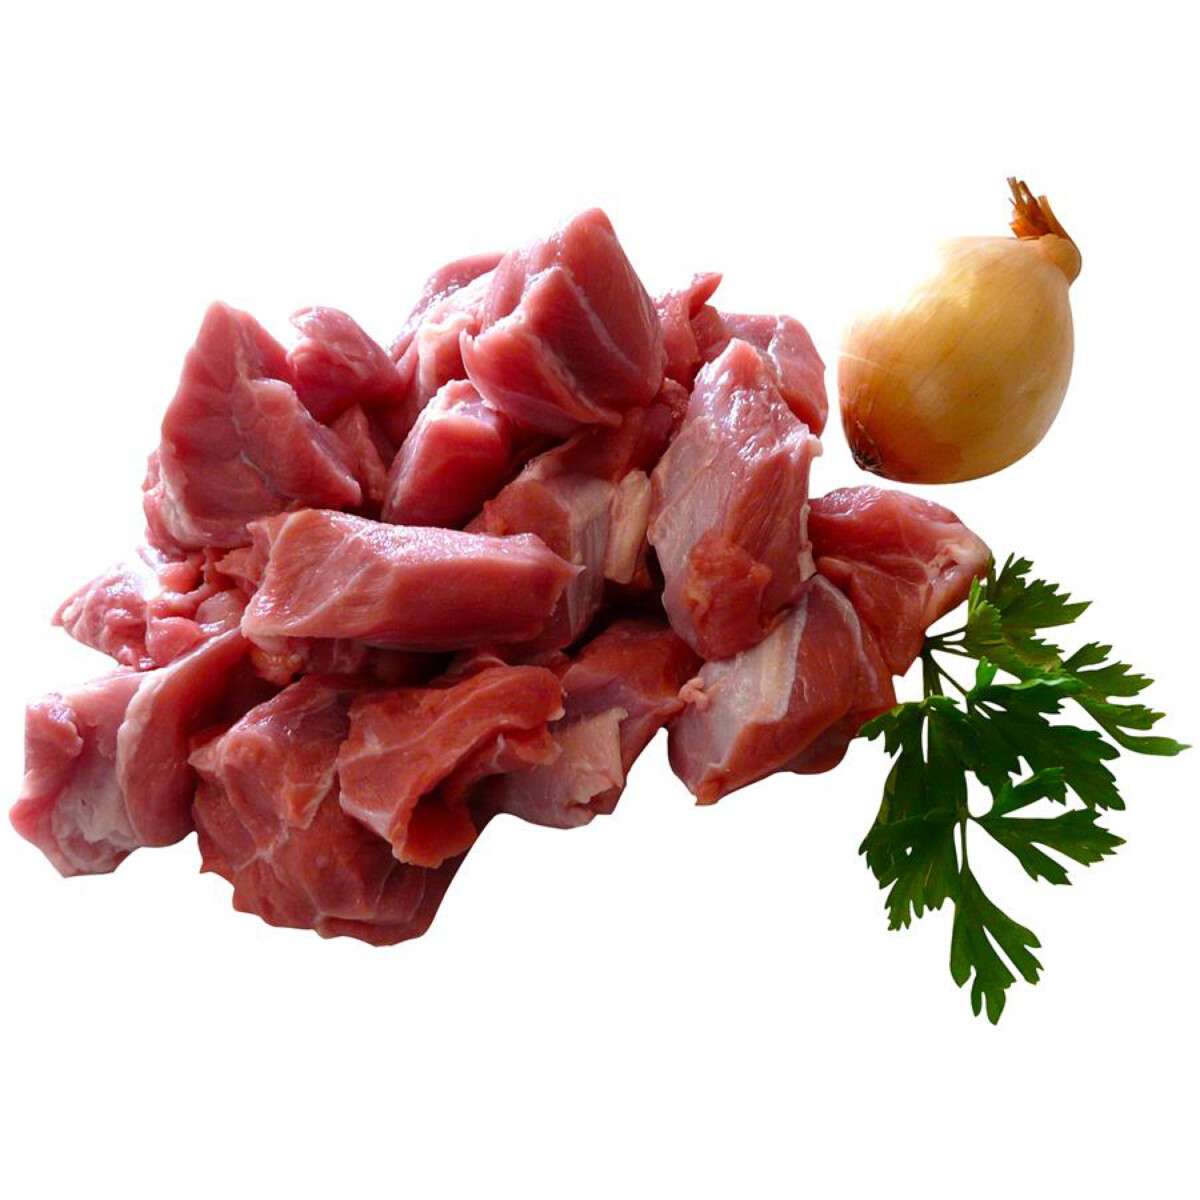 Bio Teľacie mäso na guláš, cca. 500g NA OBJEDNÁVKU, DODANIE DO 7 DNÍ